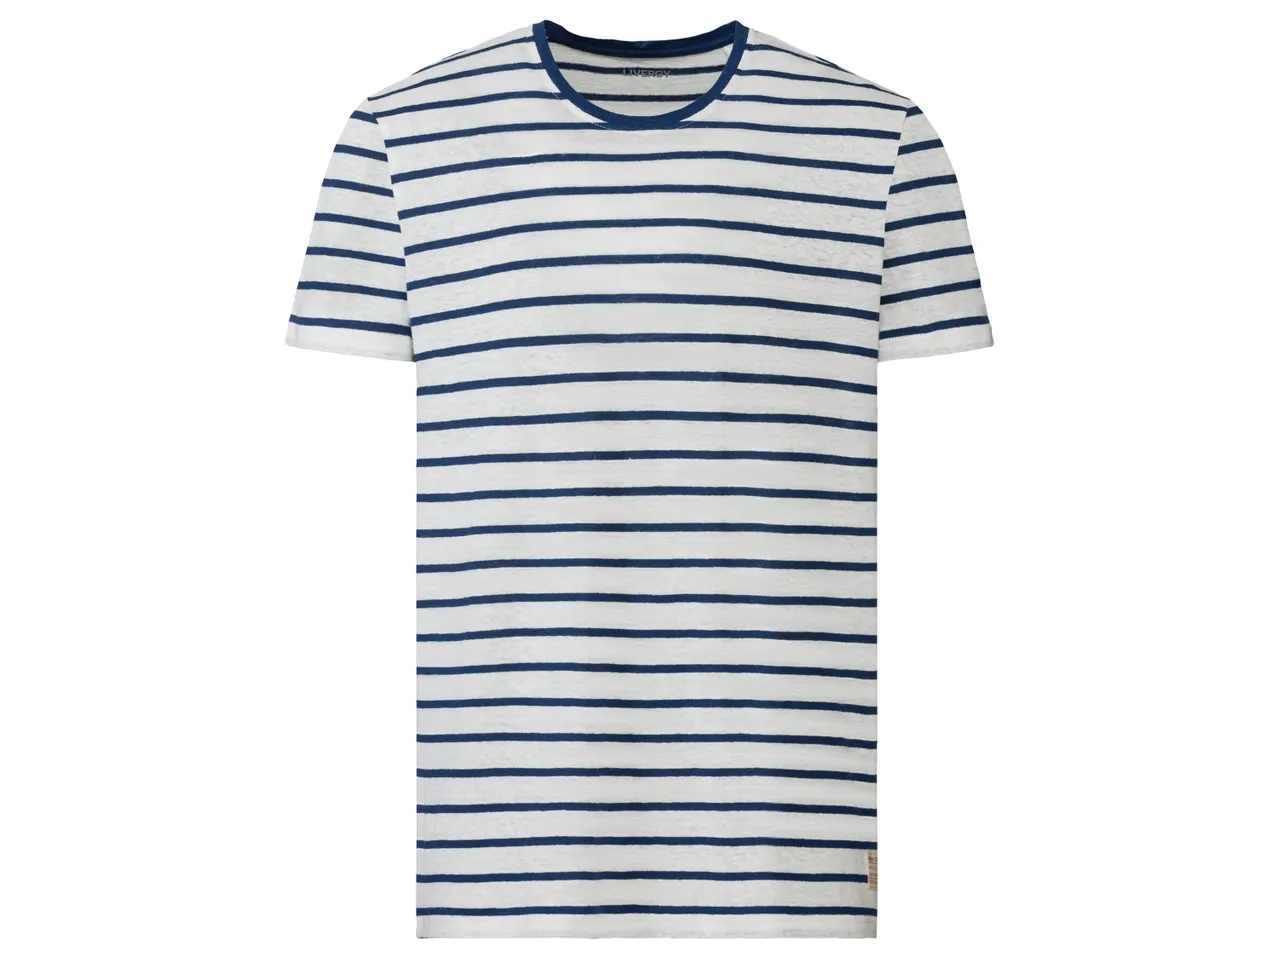 T-Shirt in canapa da uomo , prezzo 6.99 EUR 
T-Shirt in canapa da uomo Misure: S-XL ...